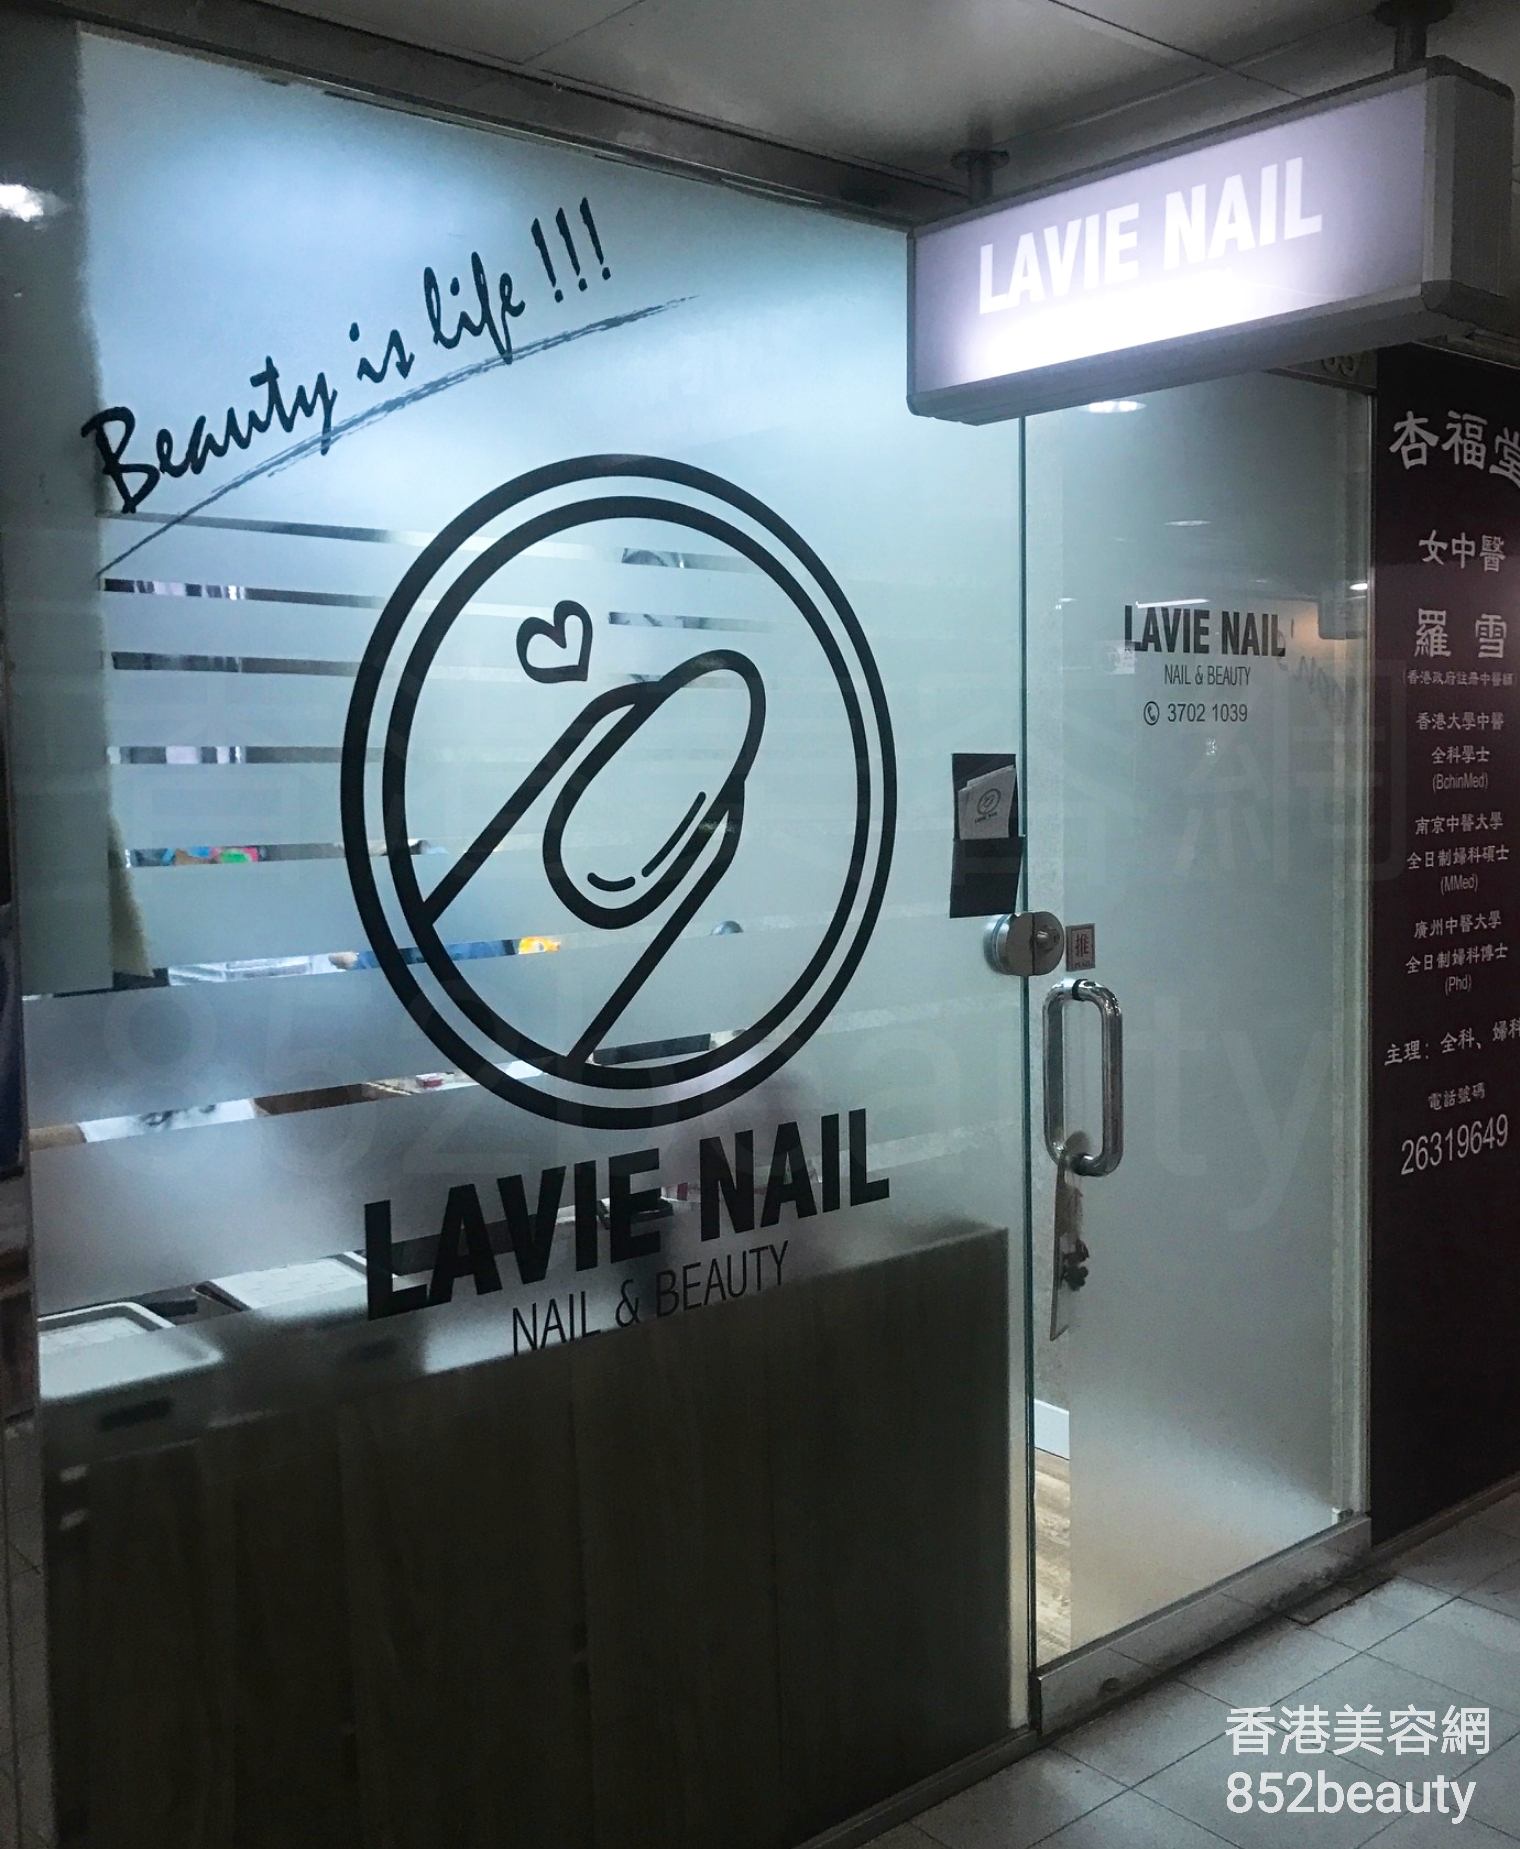 香港美容網 Hong Kong Beauty Salon 美容院 / 美容師: LaVie Nail